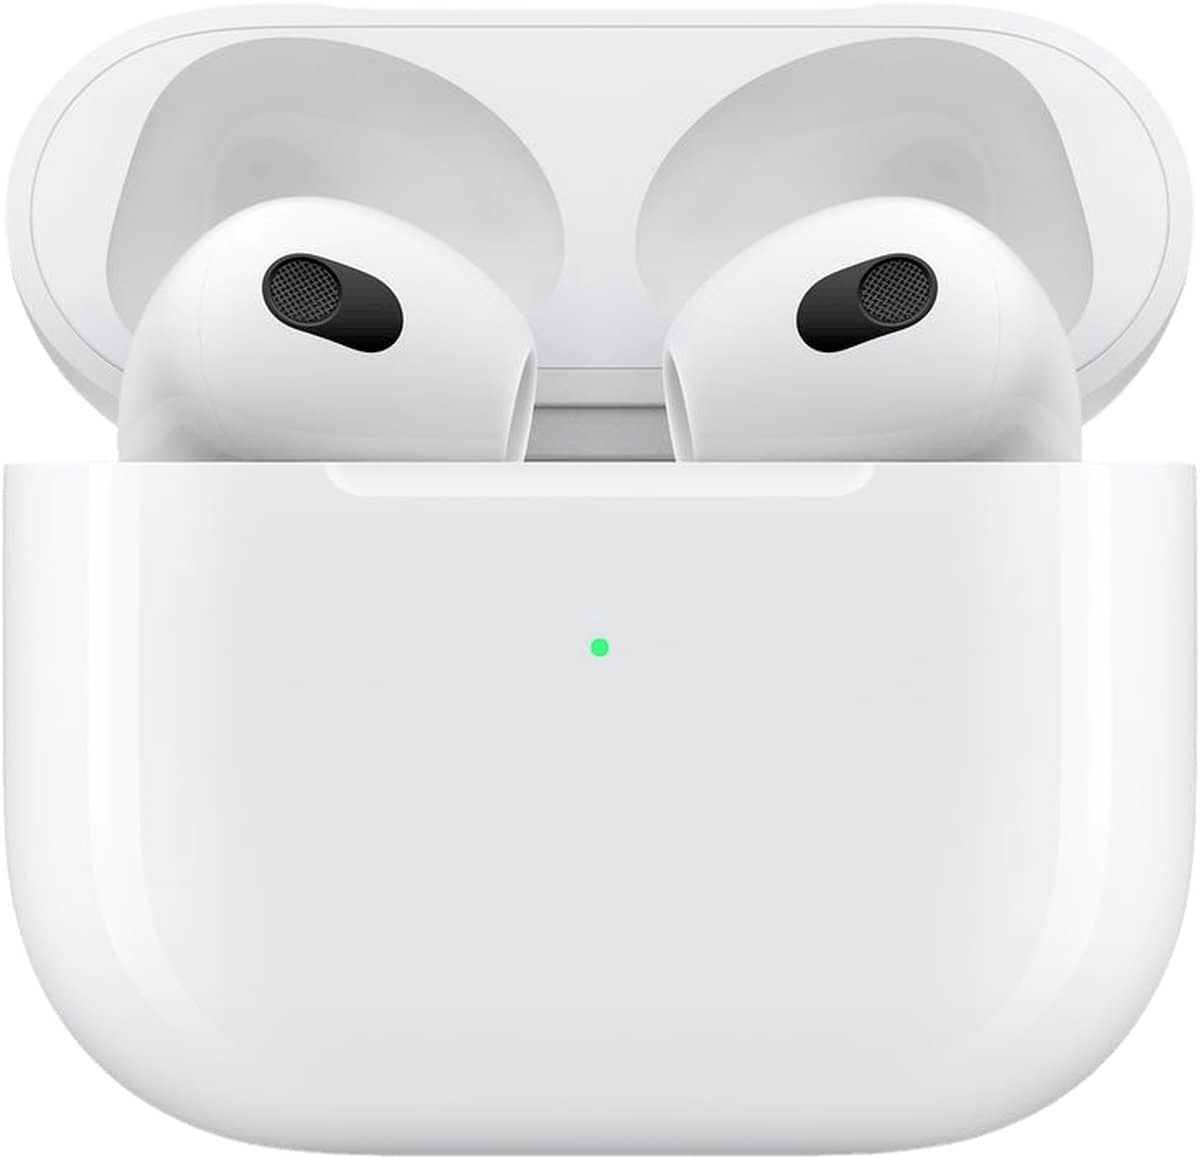 Apple AirPods 3 – met MagSafe oplaadcase. De allernieuwste